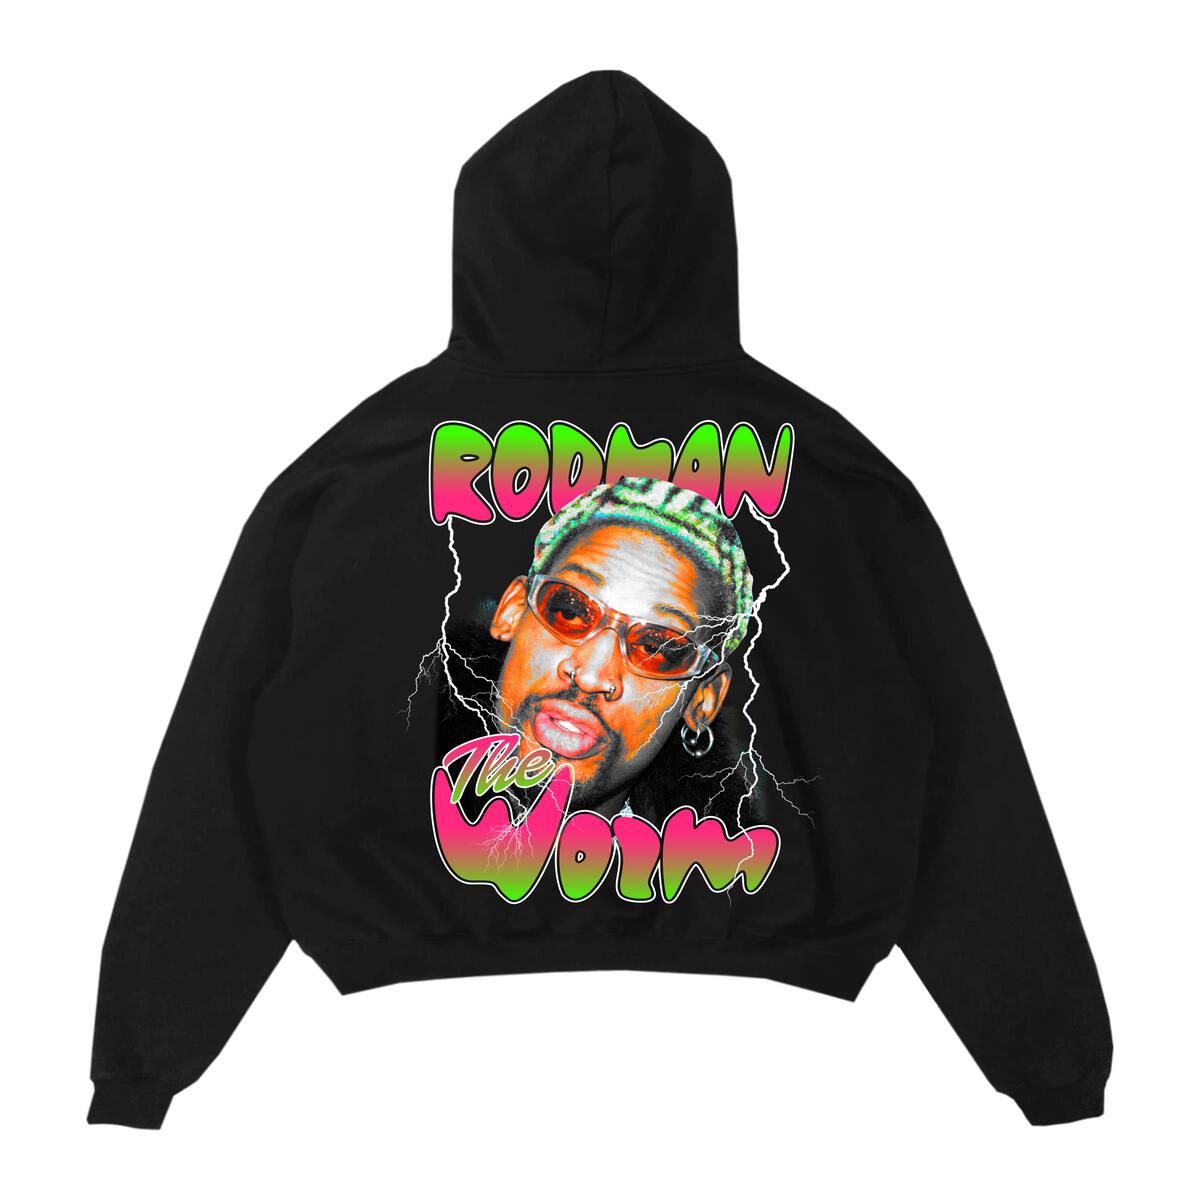 画像1: Rodman Brand The Worm Hoody Black / ロッドマンブランド プルオーバー スウェットフーディ ブラック (1)